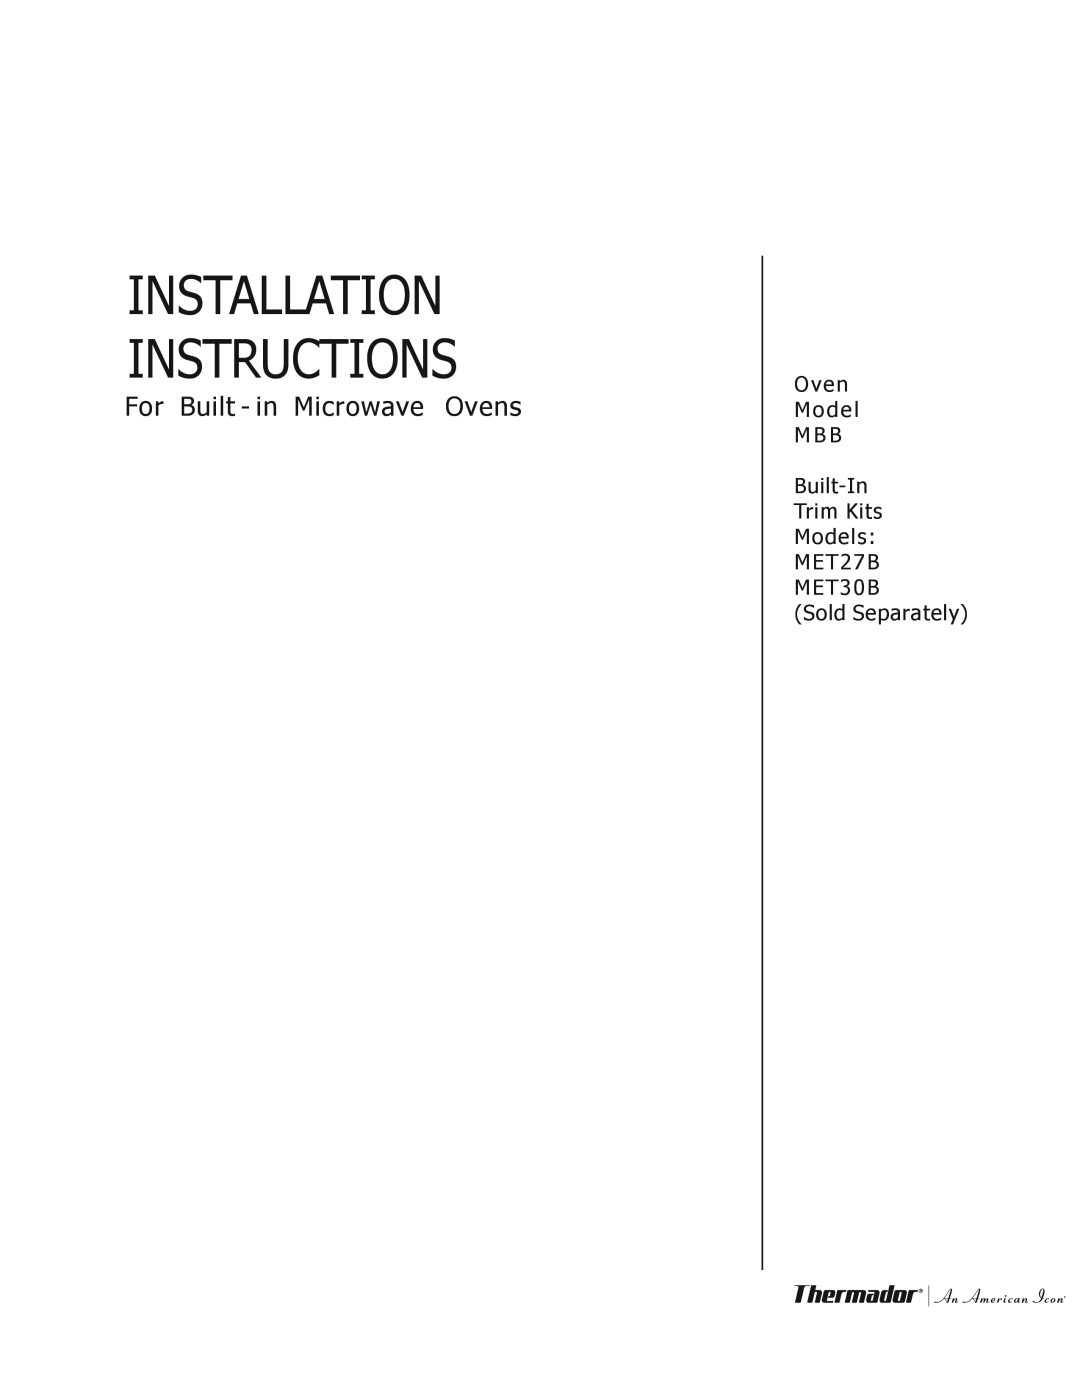 Thermador MET27B, MET30B installation instructions Installation Instructions, For Built - in Microwave Ovens 